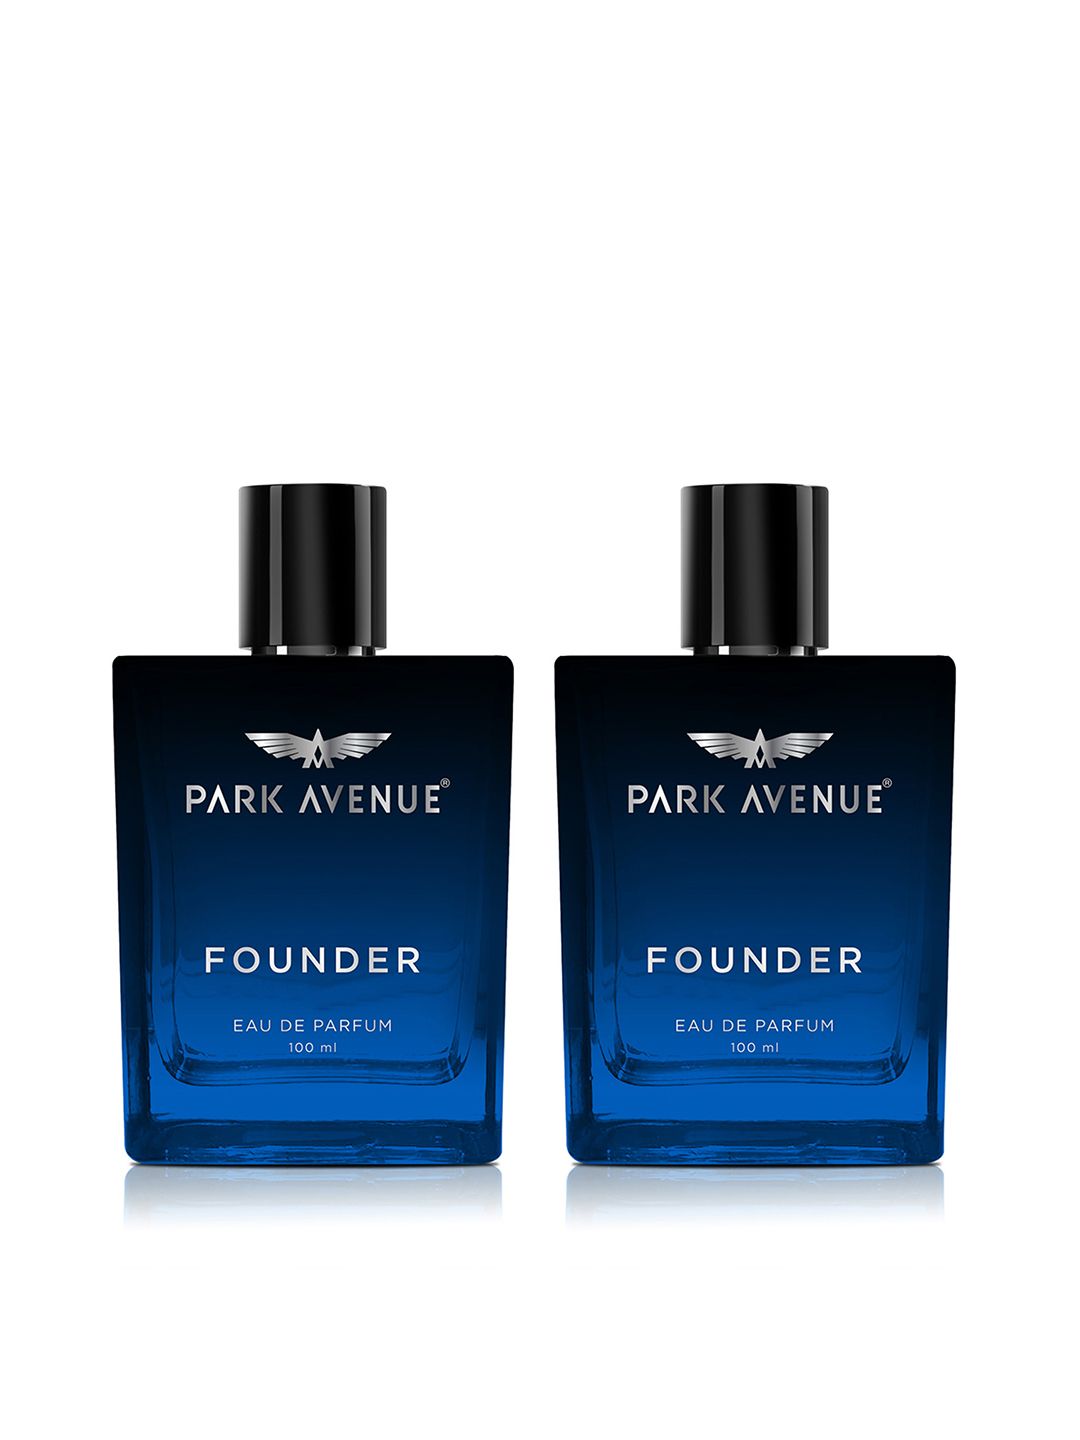 Park Avenue Men Set of 2 Founder Long Lasting Eau De Parfum - 100ml each